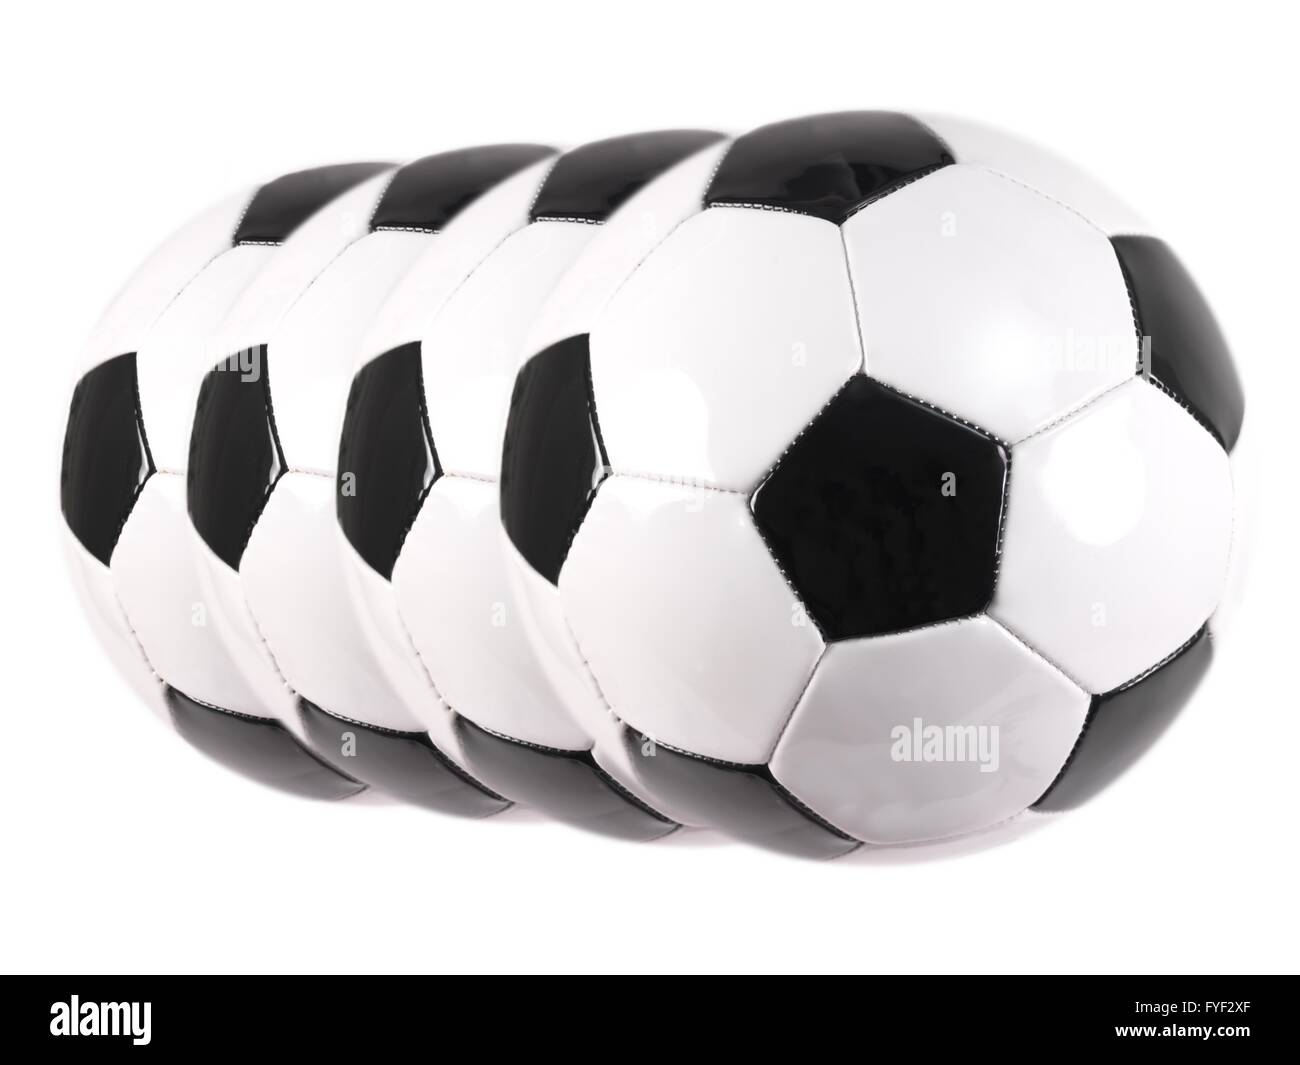 Les ballons de soccer isolé sur fond blanc Banque D'Images